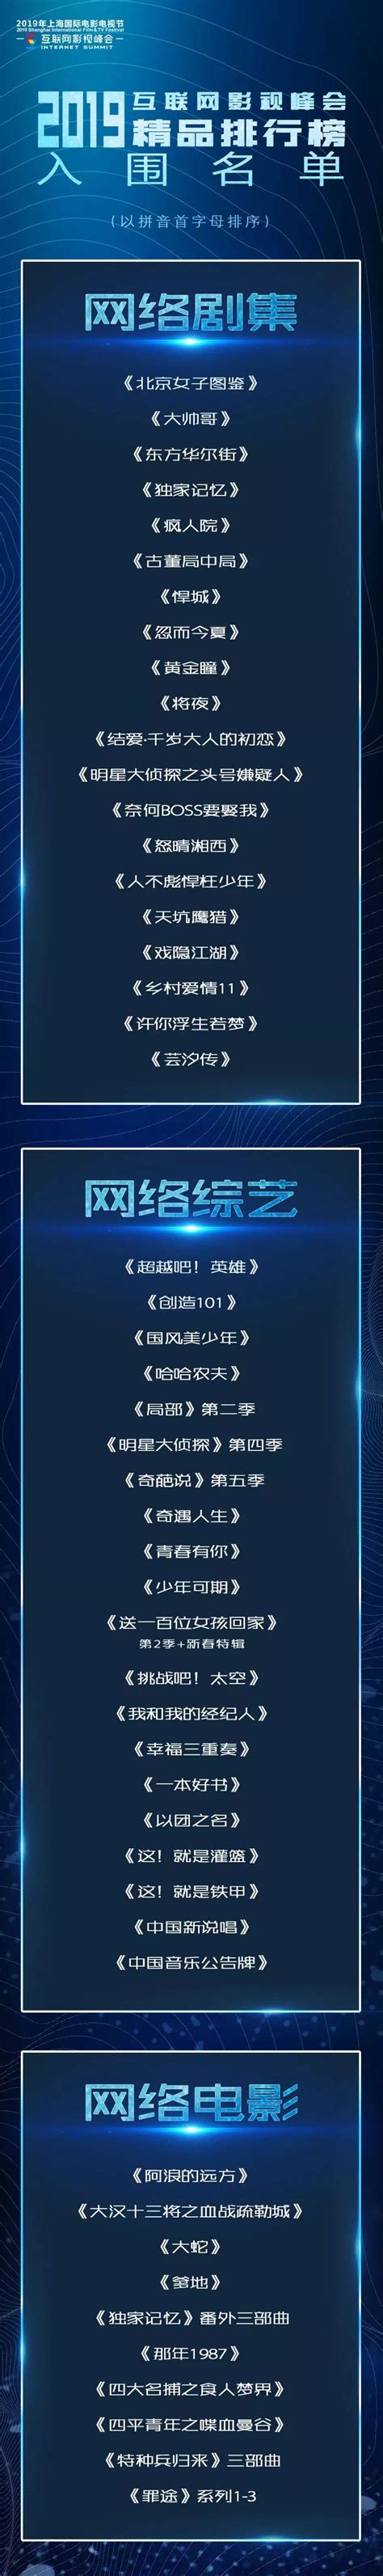 2019年日历_素材中国sccnn.com